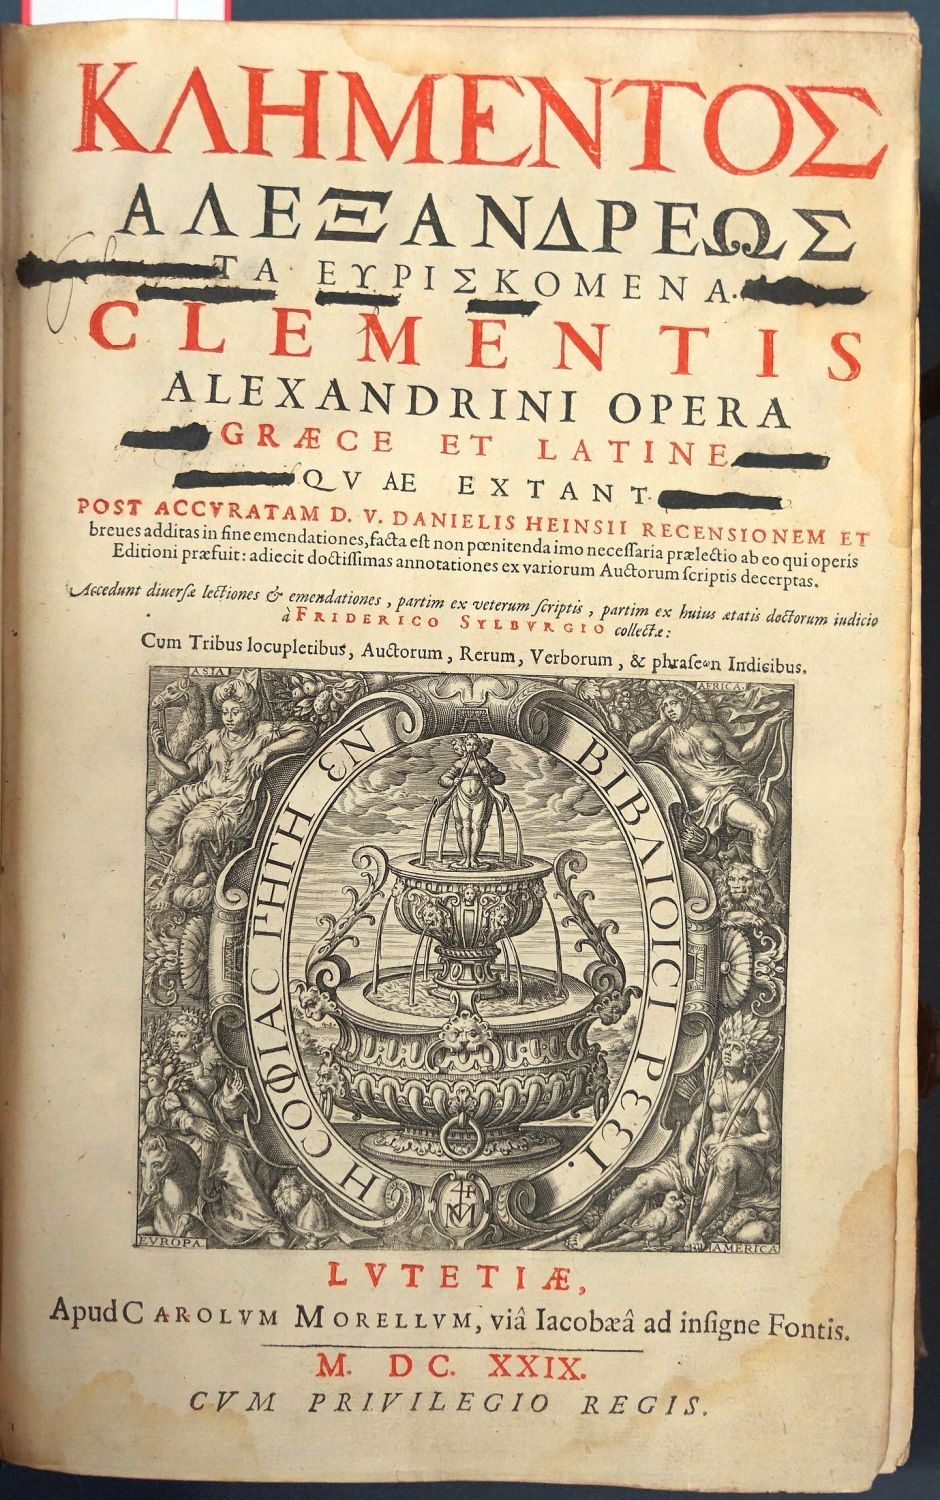 Lot 1261, Auction  115, Clemens von Alexandria, Opera Graece et Latinae quae extant